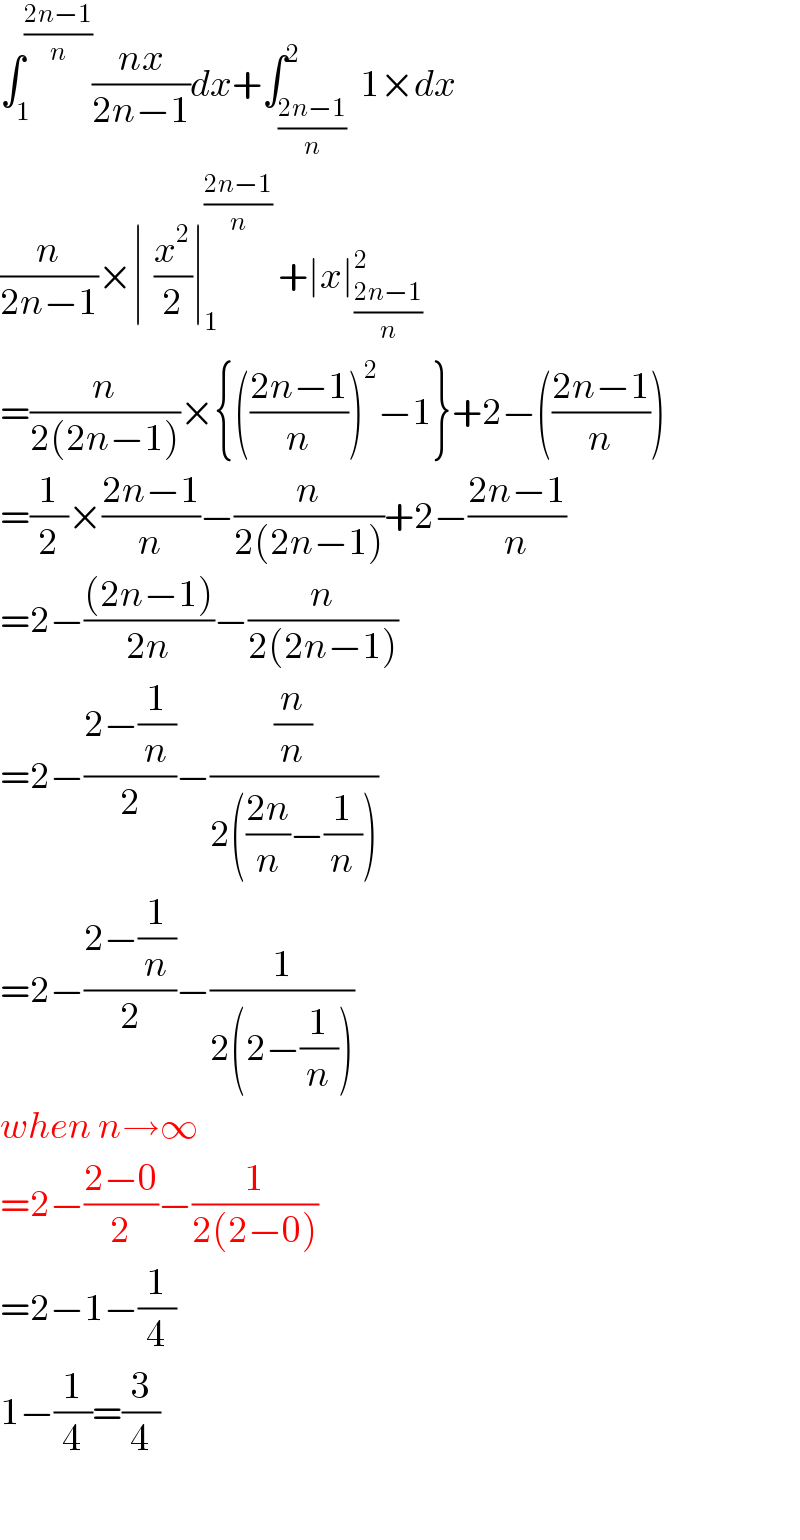 ∫_1 ^((2n−1)/n) ((nx)/(2n−1))dx+∫_((2n−1)/n) ^2  1×dx  (n/(2n−1))×∣^ (x^2 /2)∣_1 ^((2n−1)/n)  +∣x∣_((2n−1)/n) ^2   =(n/(2(2n−1)))×{(((2n−1)/n))^2 −1}+2−(((2n−1)/n))  =(1/2)×((2n−1)/n)−(n/(2(2n−1)))+2−((2n−1)/n)  =2−(((2n−1))/(2n))−(n/(2(2n−1)))  =2−((2−(1/n))/2)−((n/n)/(2(((2n)/n)−(1/n))))  =2−((2−(1/n))/2)−(1/(2(2−(1/n))))  when n→∞  =2−((2−0)/2)−(1/(2(2−0)))  =2−1−(1/4)  1−(1/4)=(3/4)    